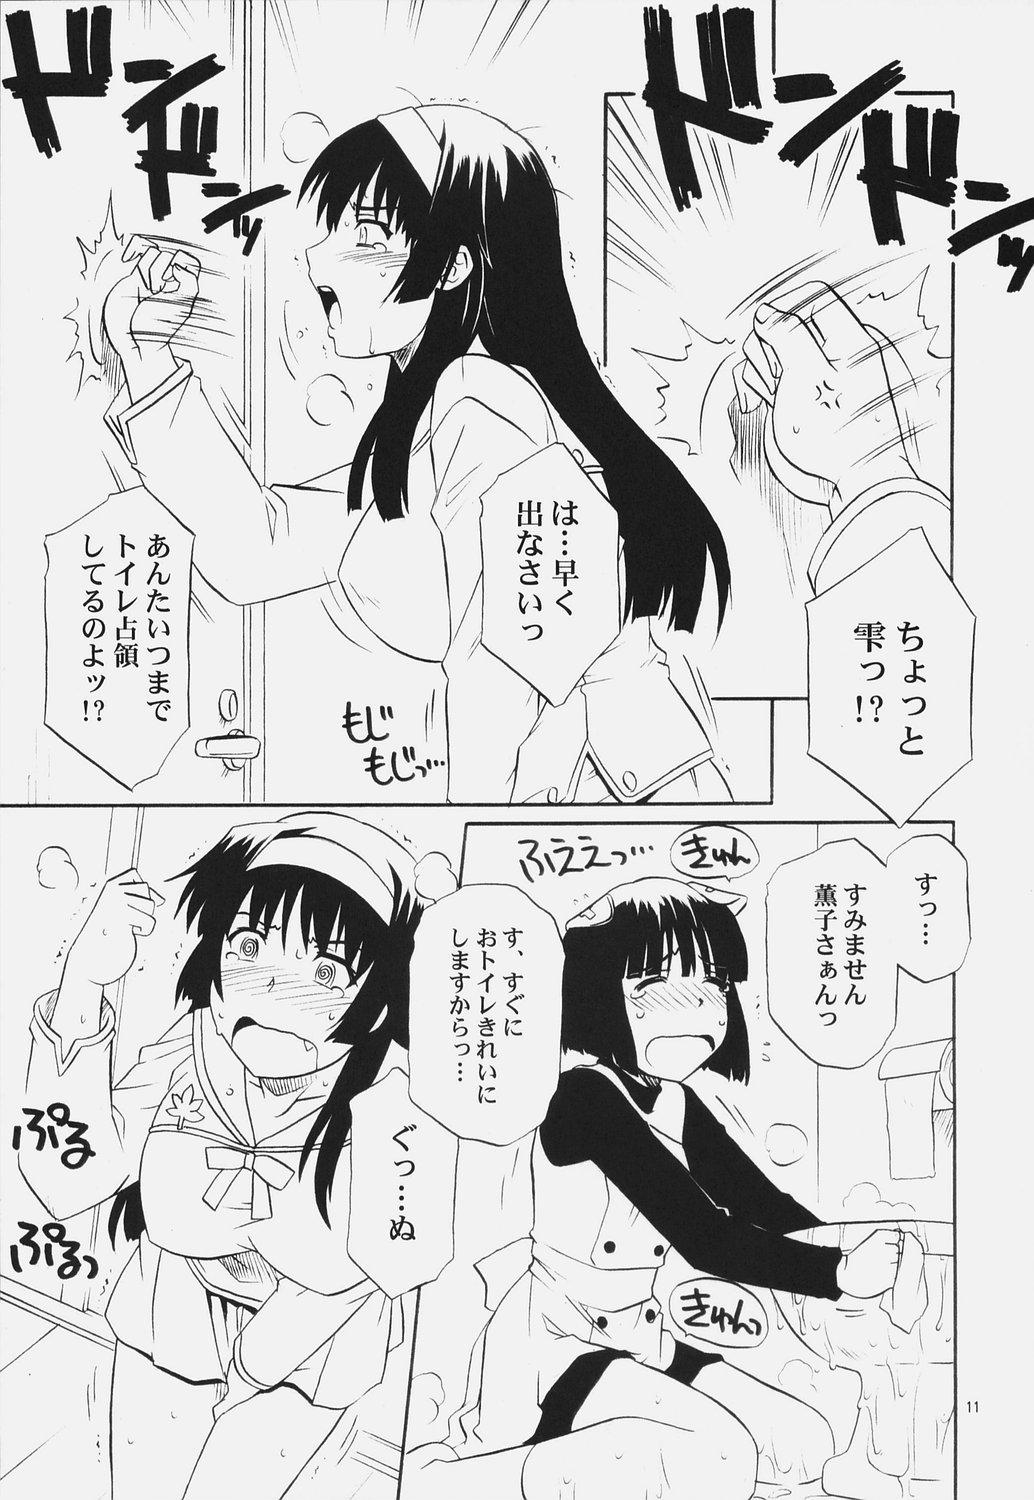 Eating (C72) [CAZA MAYOR (Tsutsumi Akari)] AneColle - One-chan Characters Collection 2007 (Various) - Iinari aibure shon Gorda - Page 10